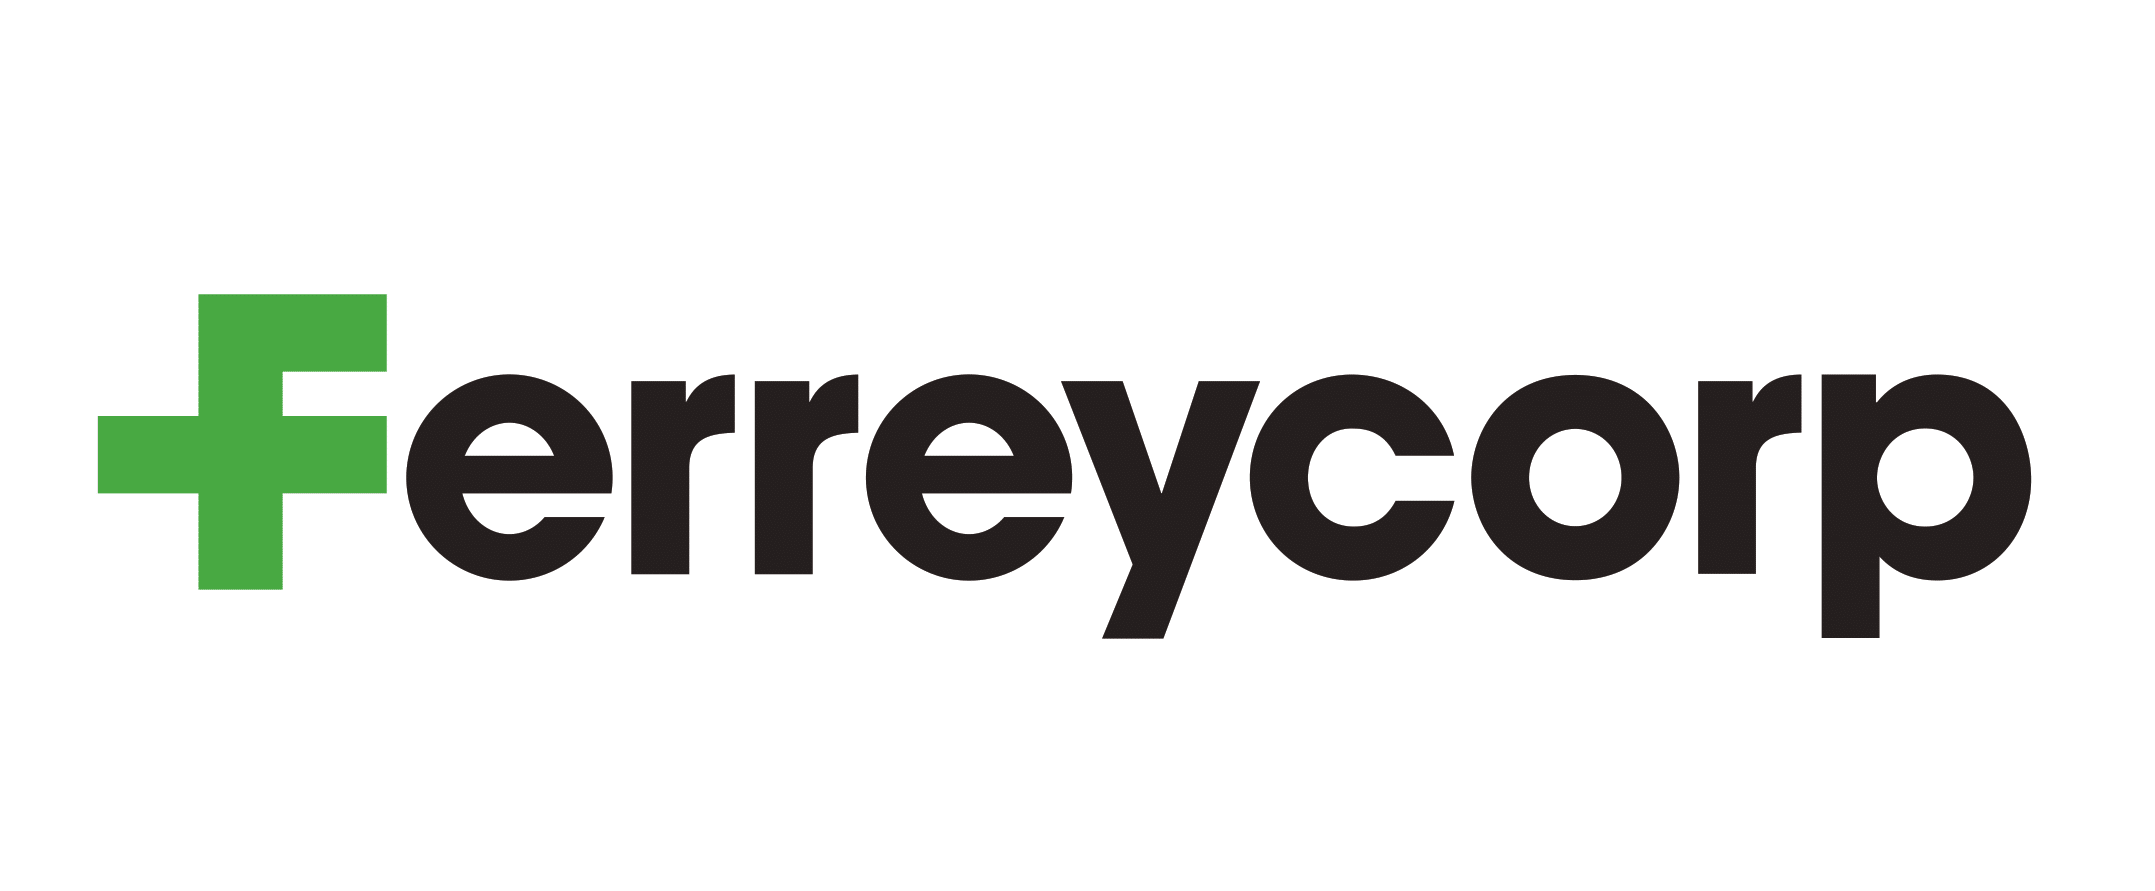 Ferreycorp